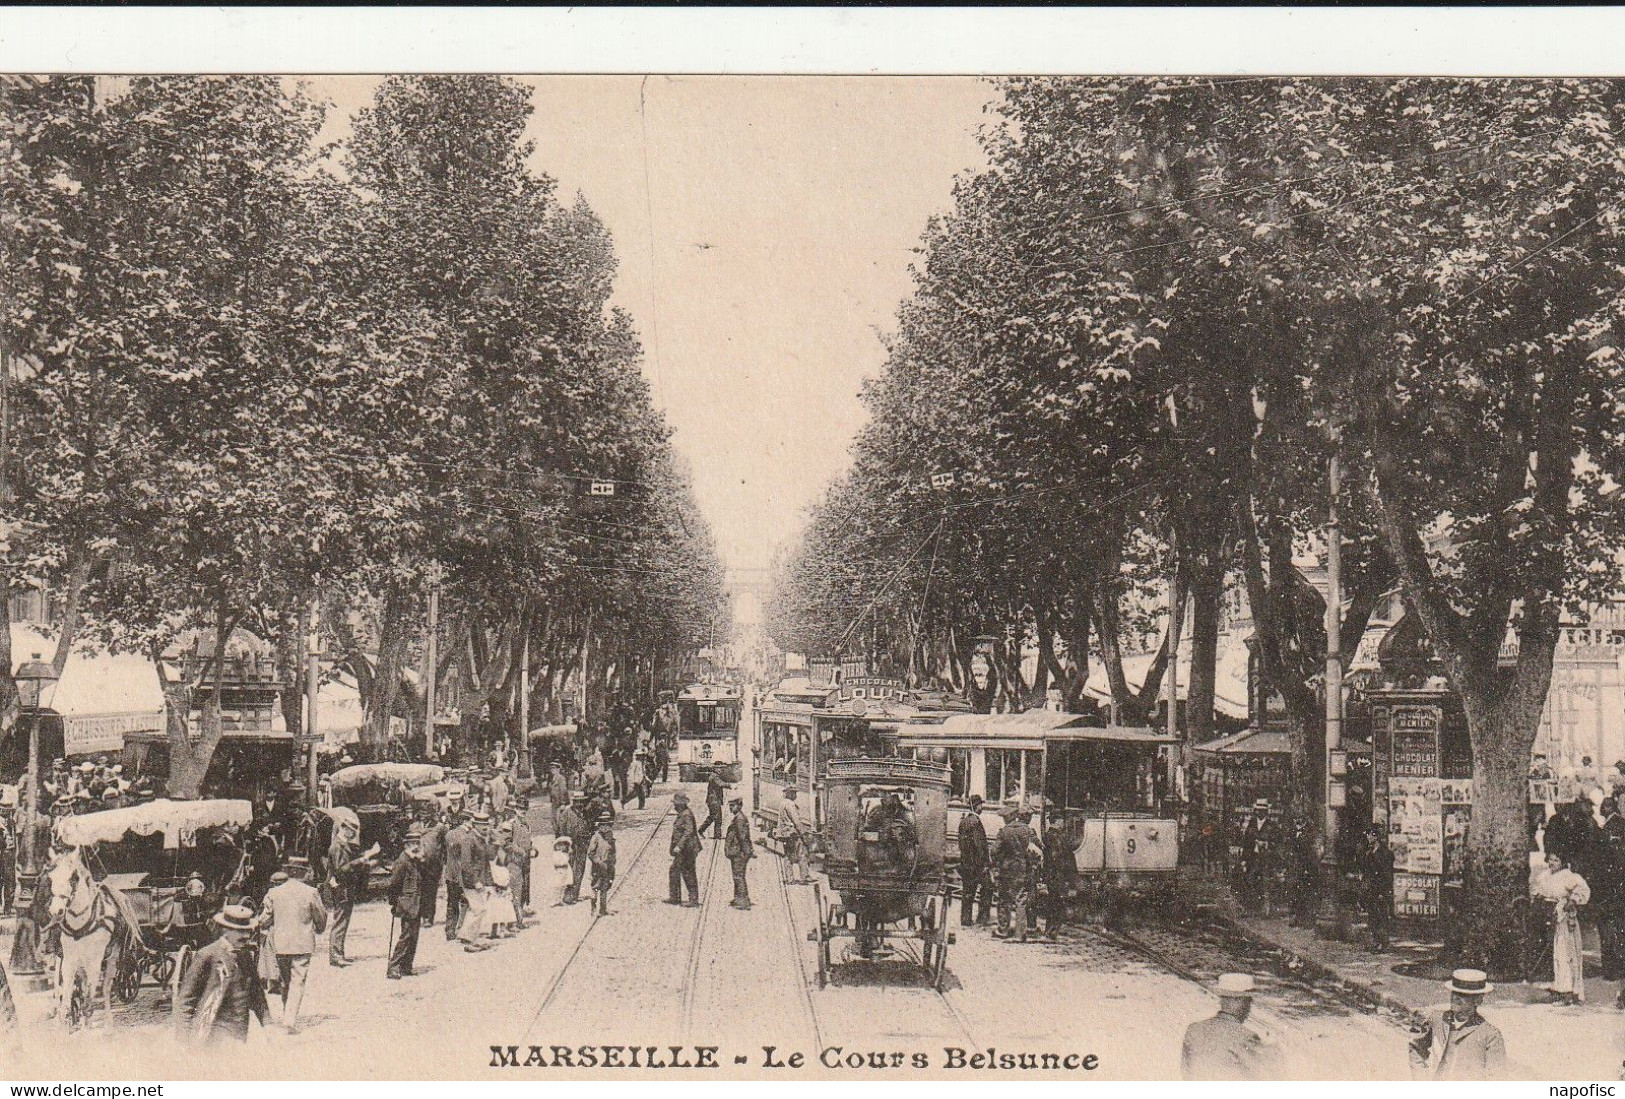 13-Marseille Le Cours Belsunce - Canebière, Stadscentrum